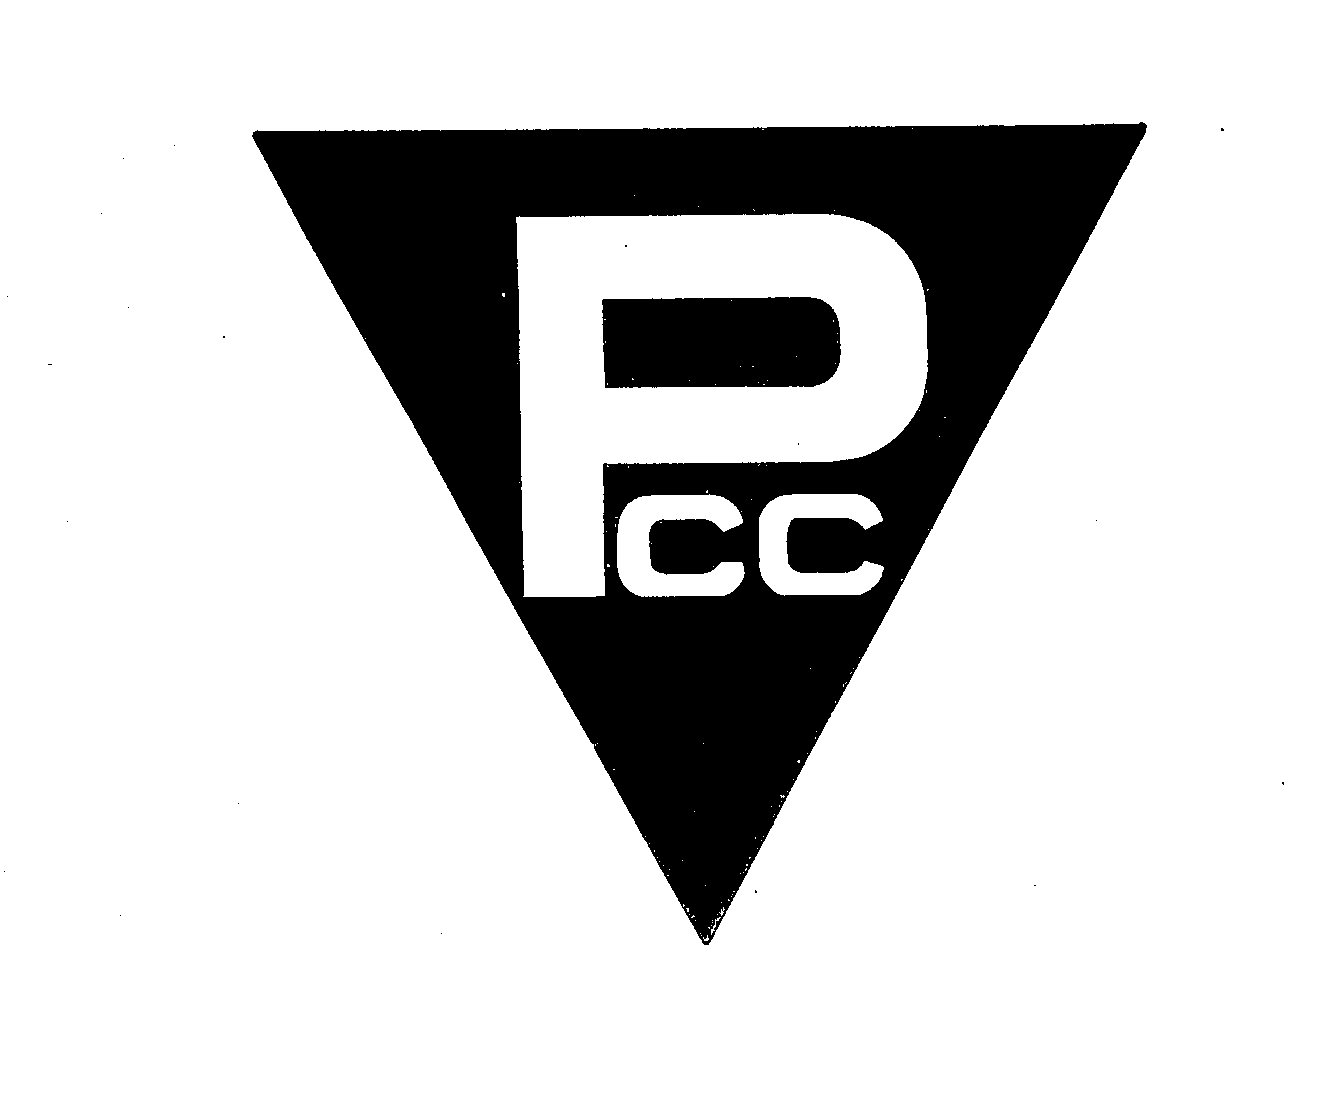  PCC